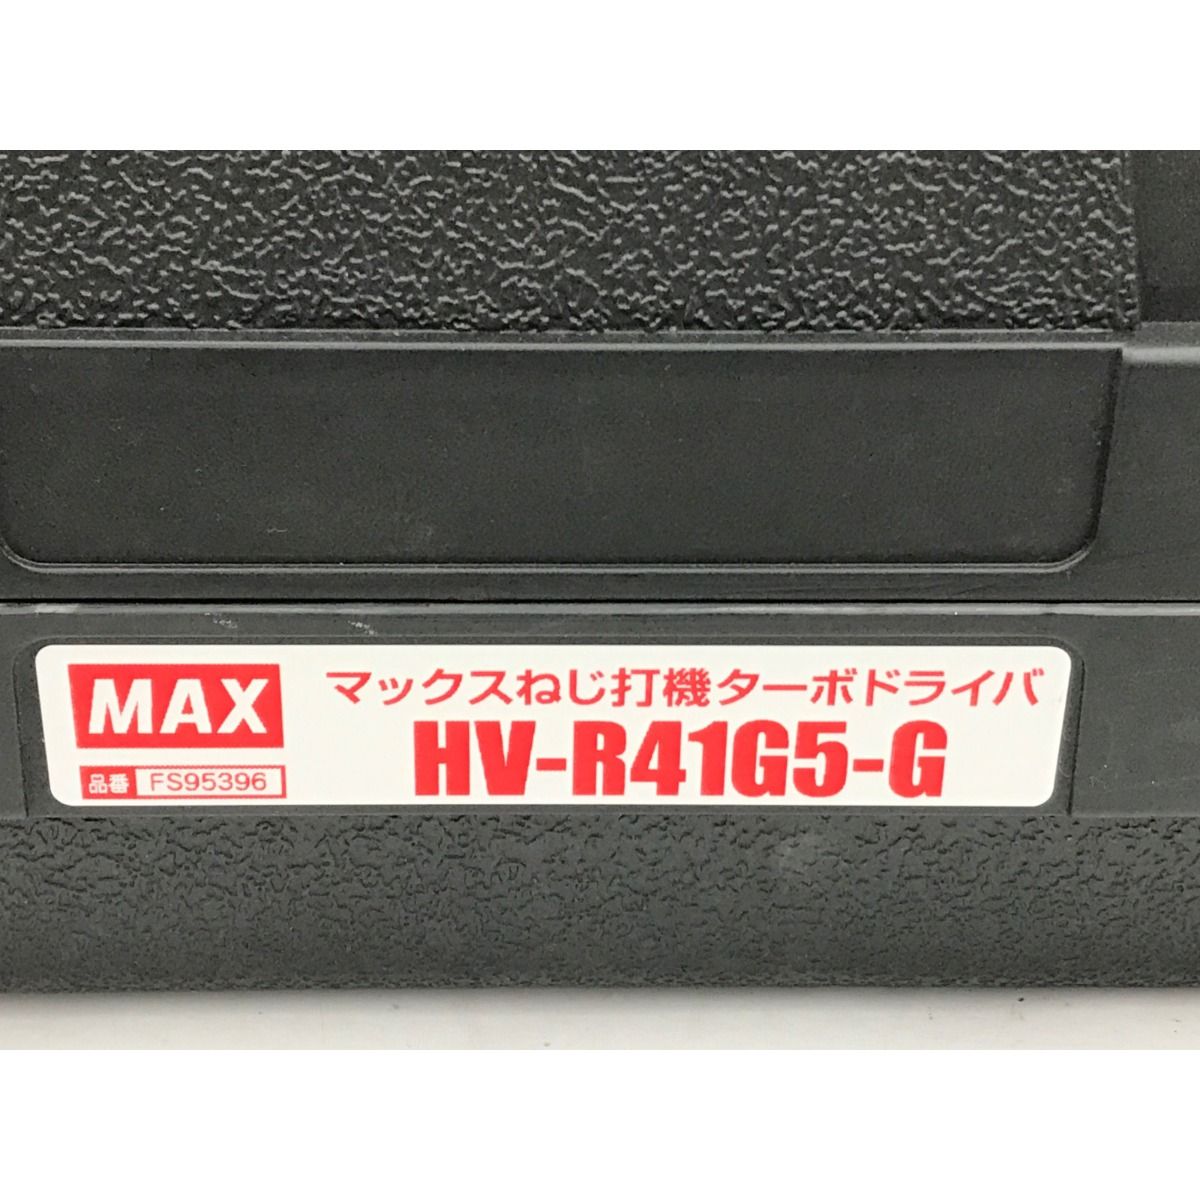 ▽▽MAX マックス エア釘打ち 付属品完備 HV-R41G5-G レッド - メルカリ